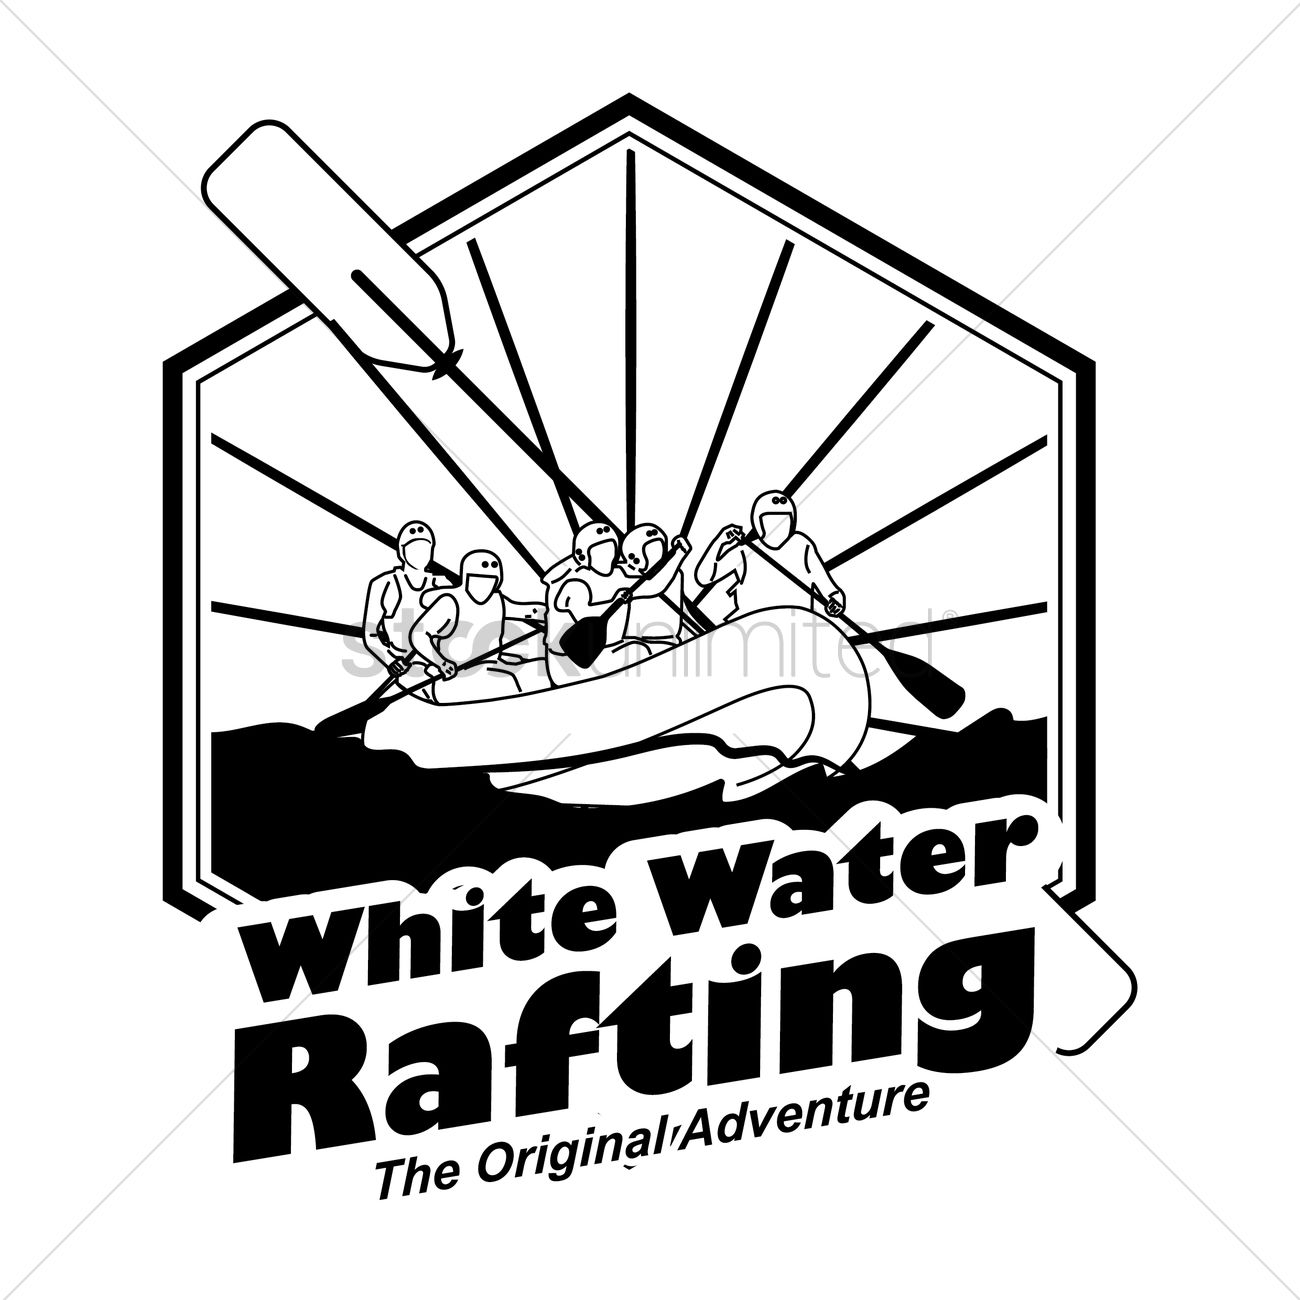 White water rafting.